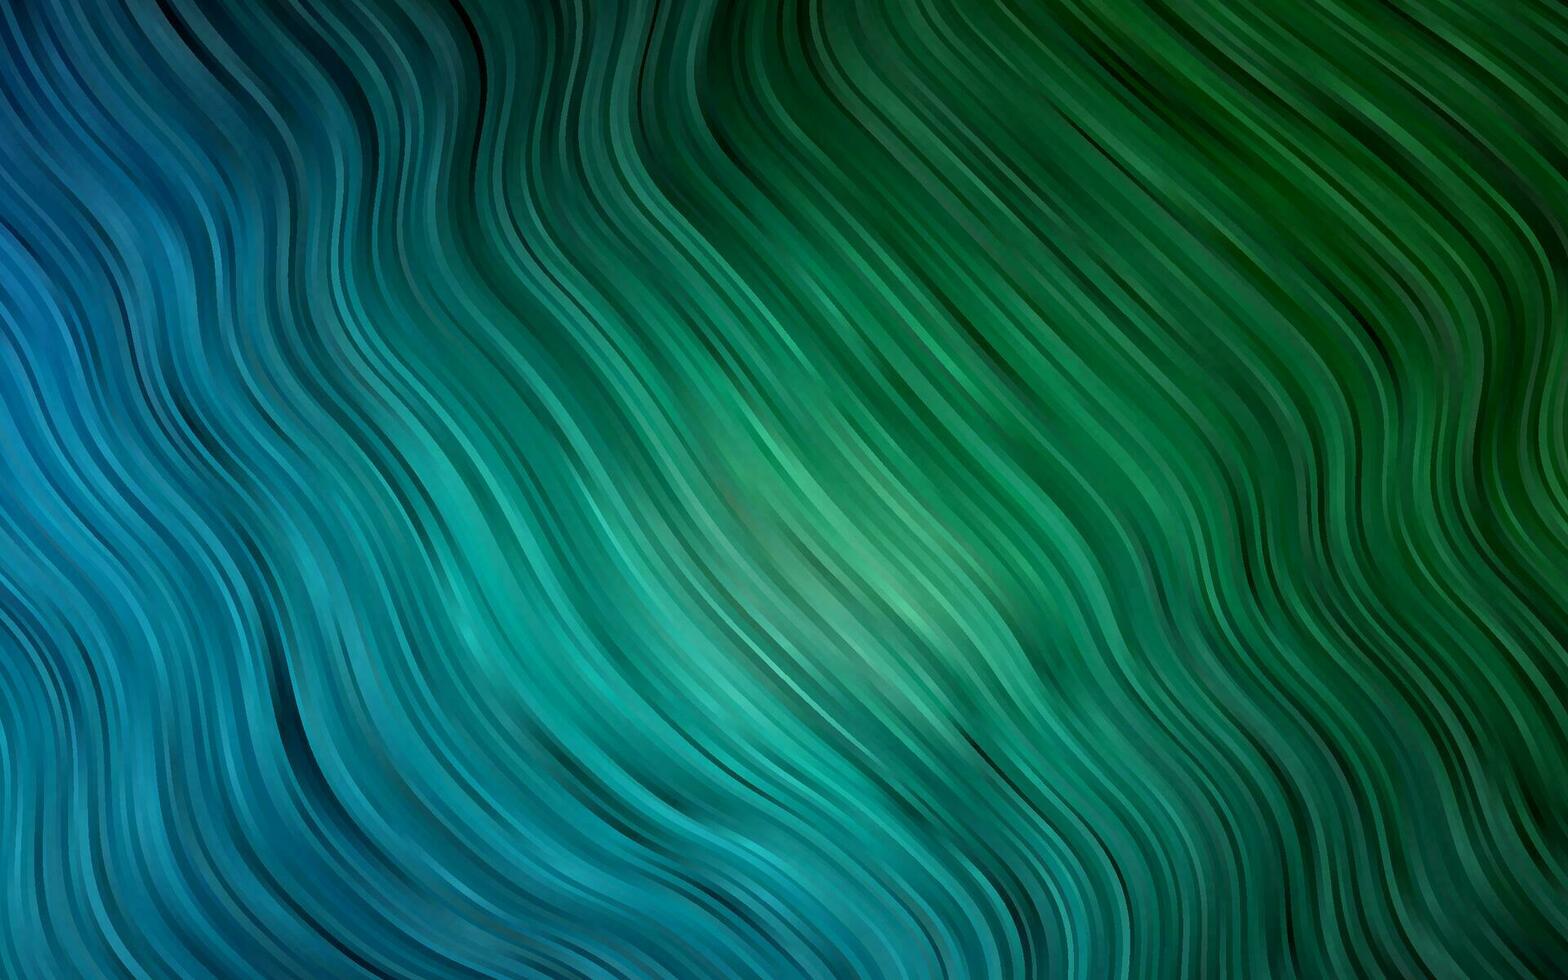 donkerblauw, groen vectorsjabloon met vloeibare vormen. vector